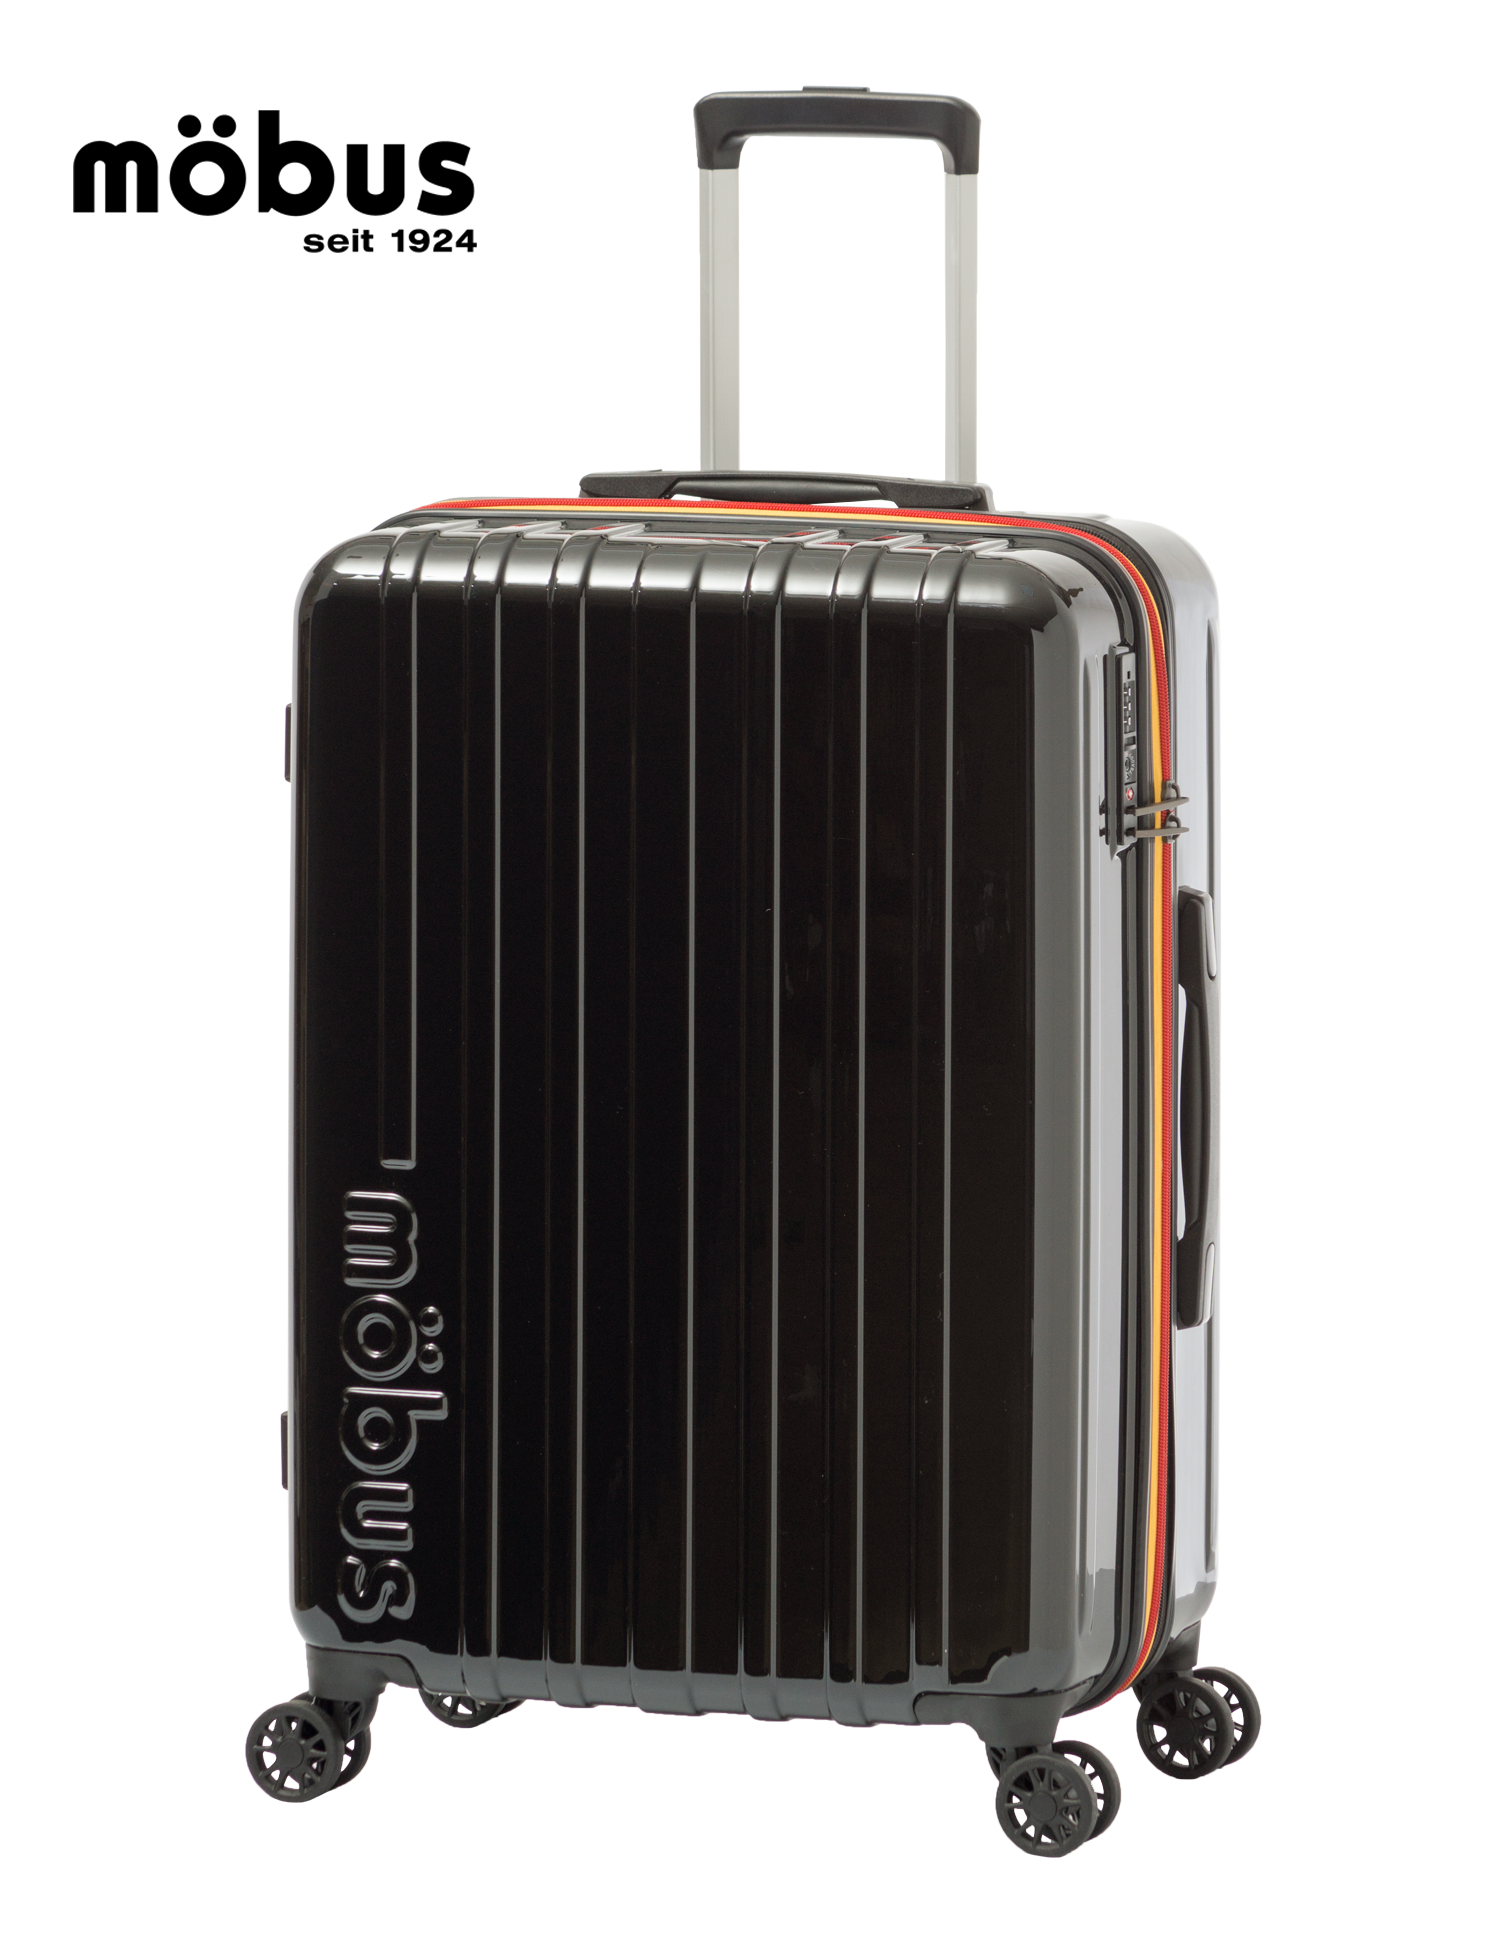 手荷物預けサイズ | アジア・ラゲージ 公式サイト | Asia Luggage Inc.